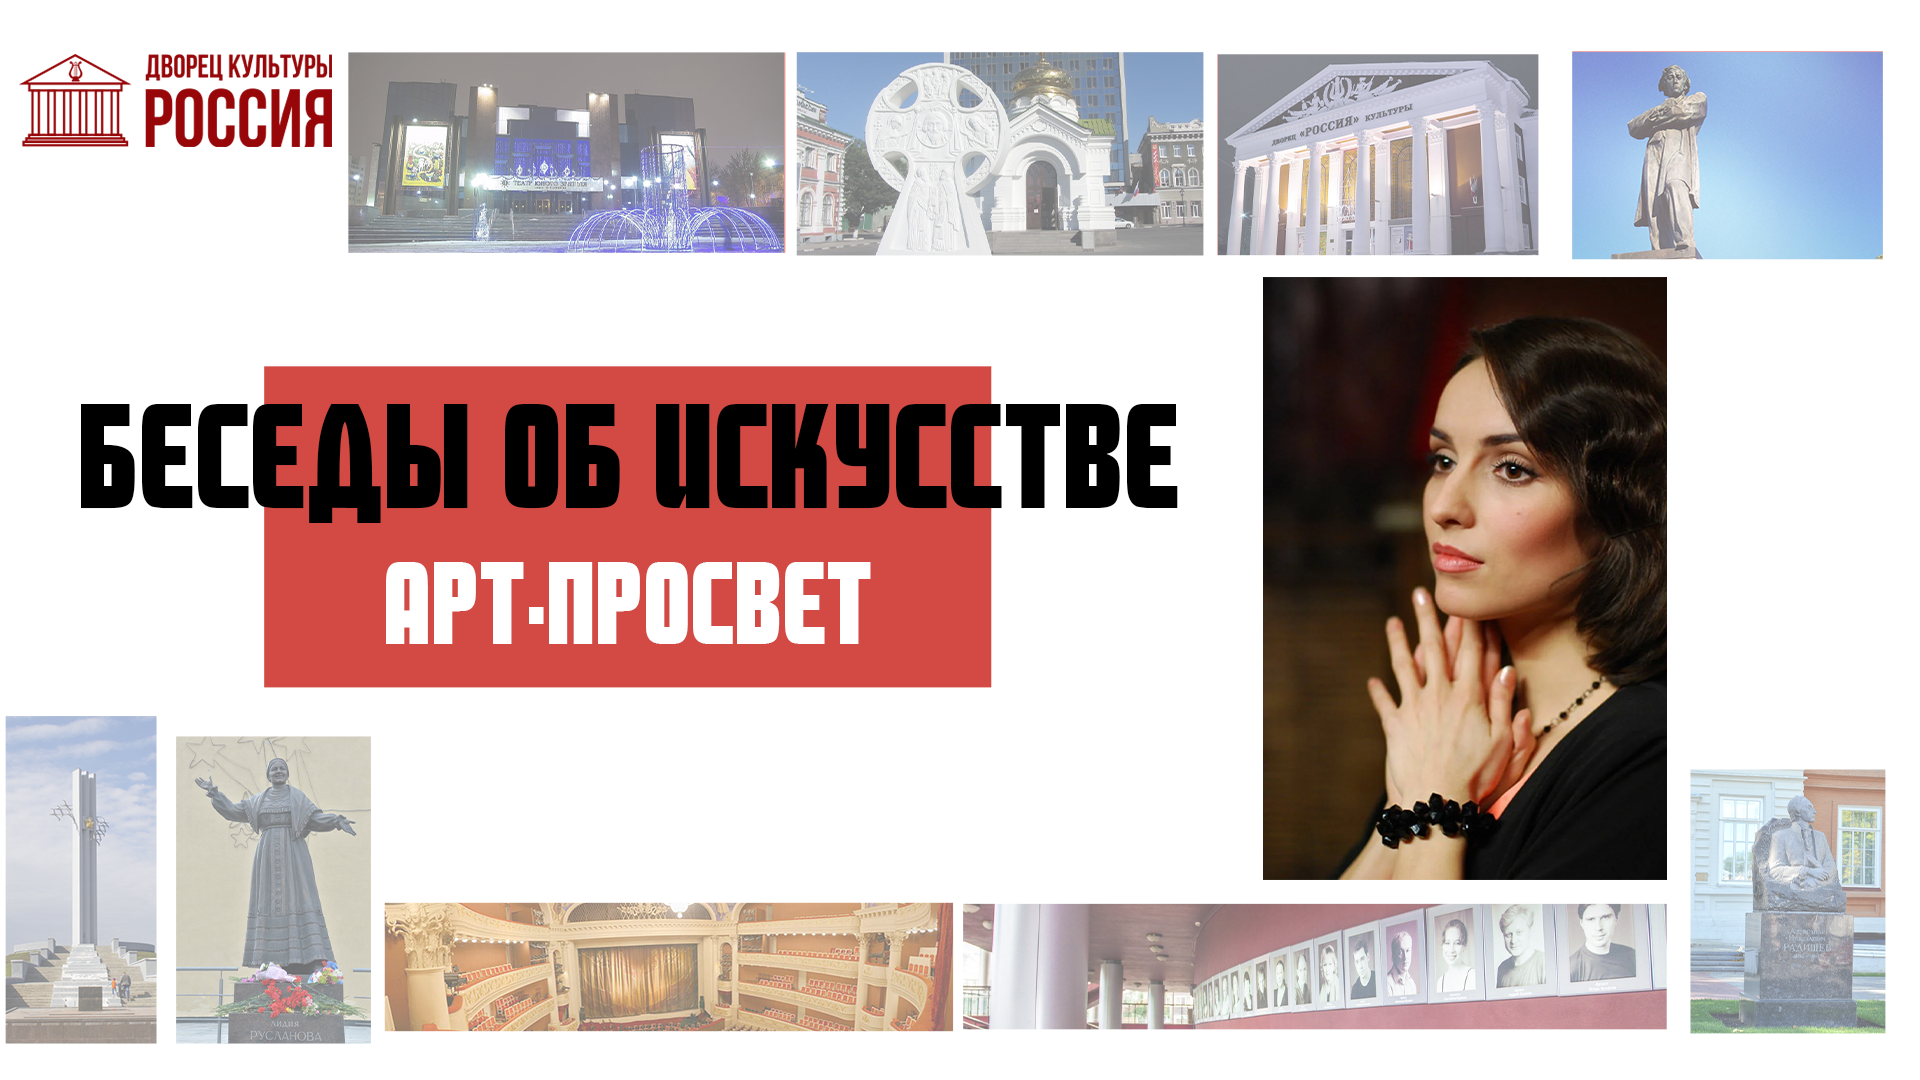 Онлайн-рубрика «Арт- просвет. Беседы об искусстве» — актриса Юлия Зимина